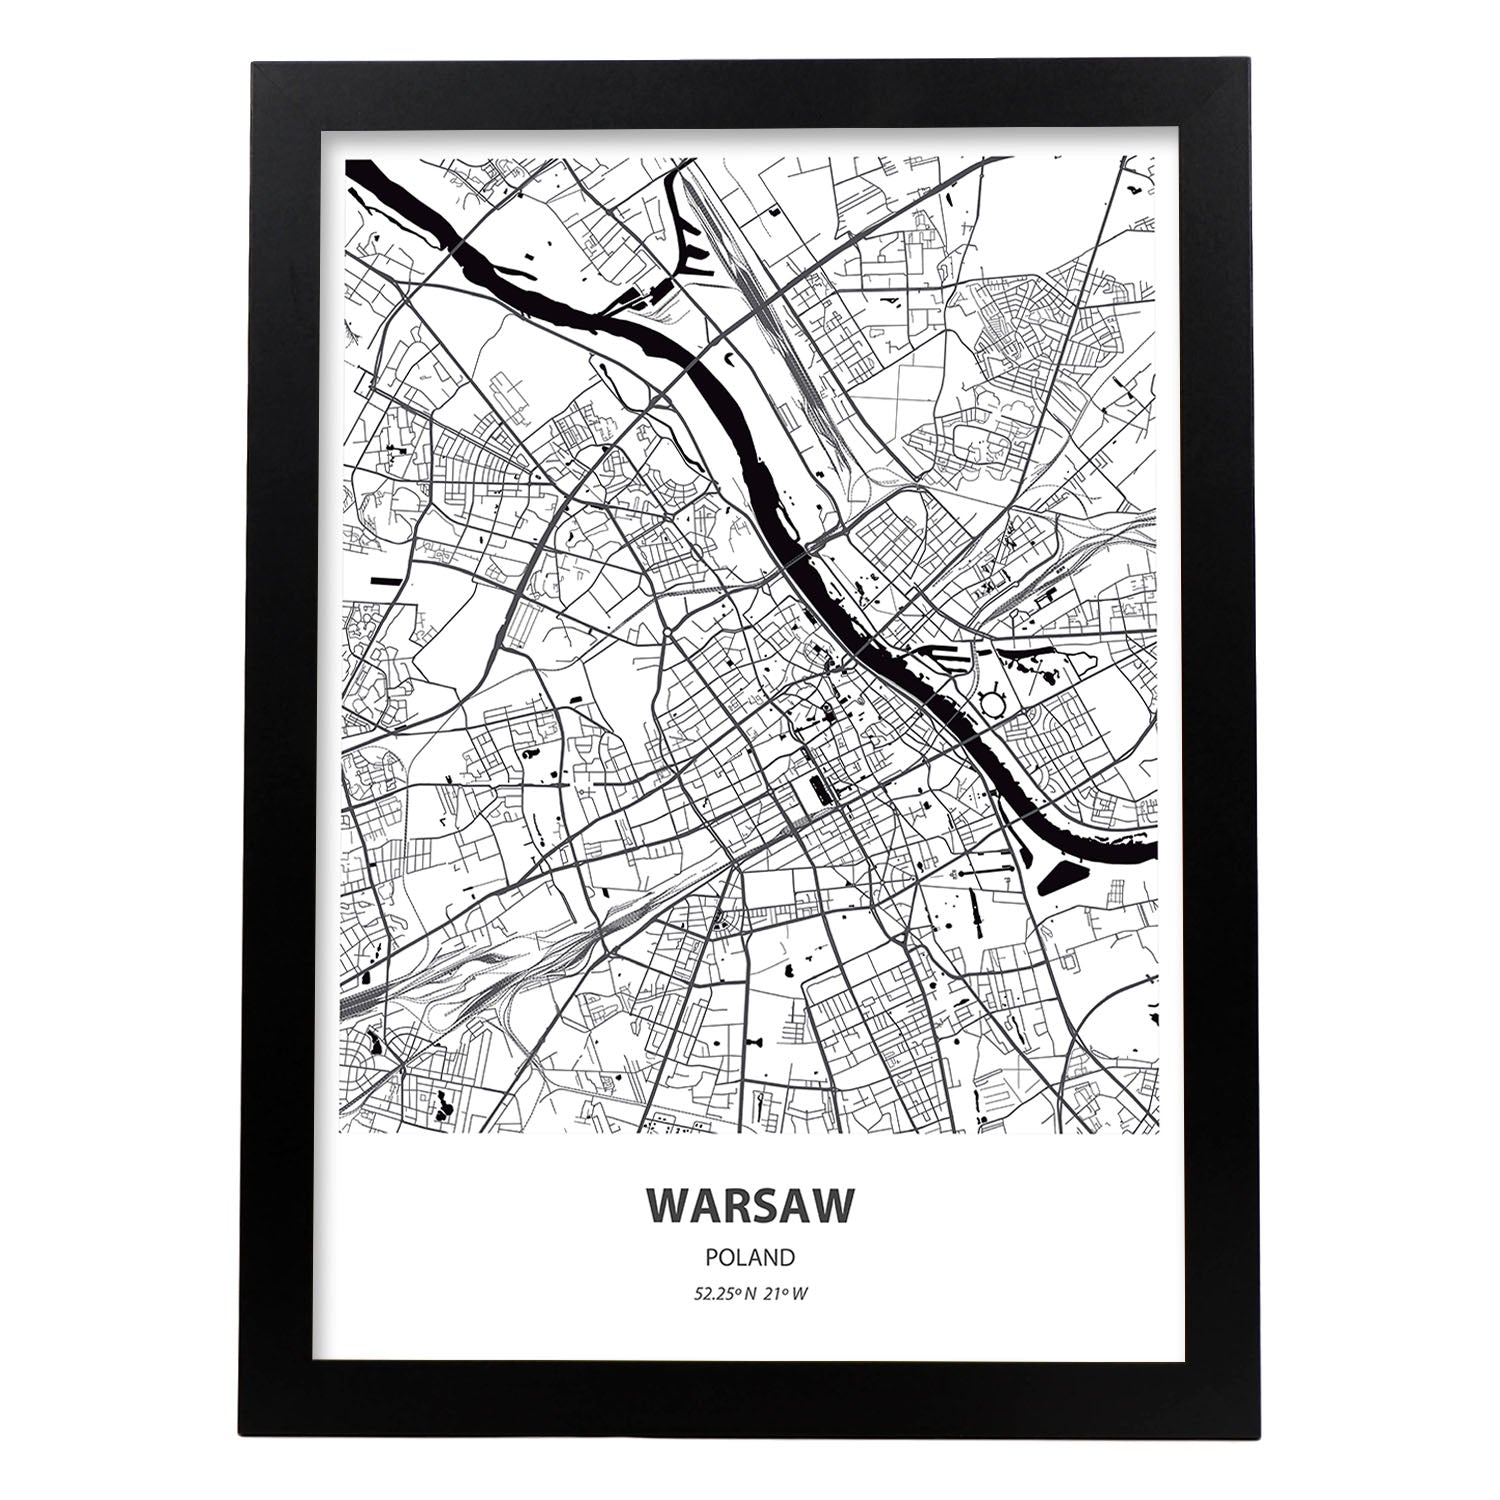 Poster con mapa de Warsaw - Polonia. Láminas de ciudades de Europa con mares y ríos en color negro.-Artwork-Nacnic-A3-Marco Negro-Nacnic Estudio SL